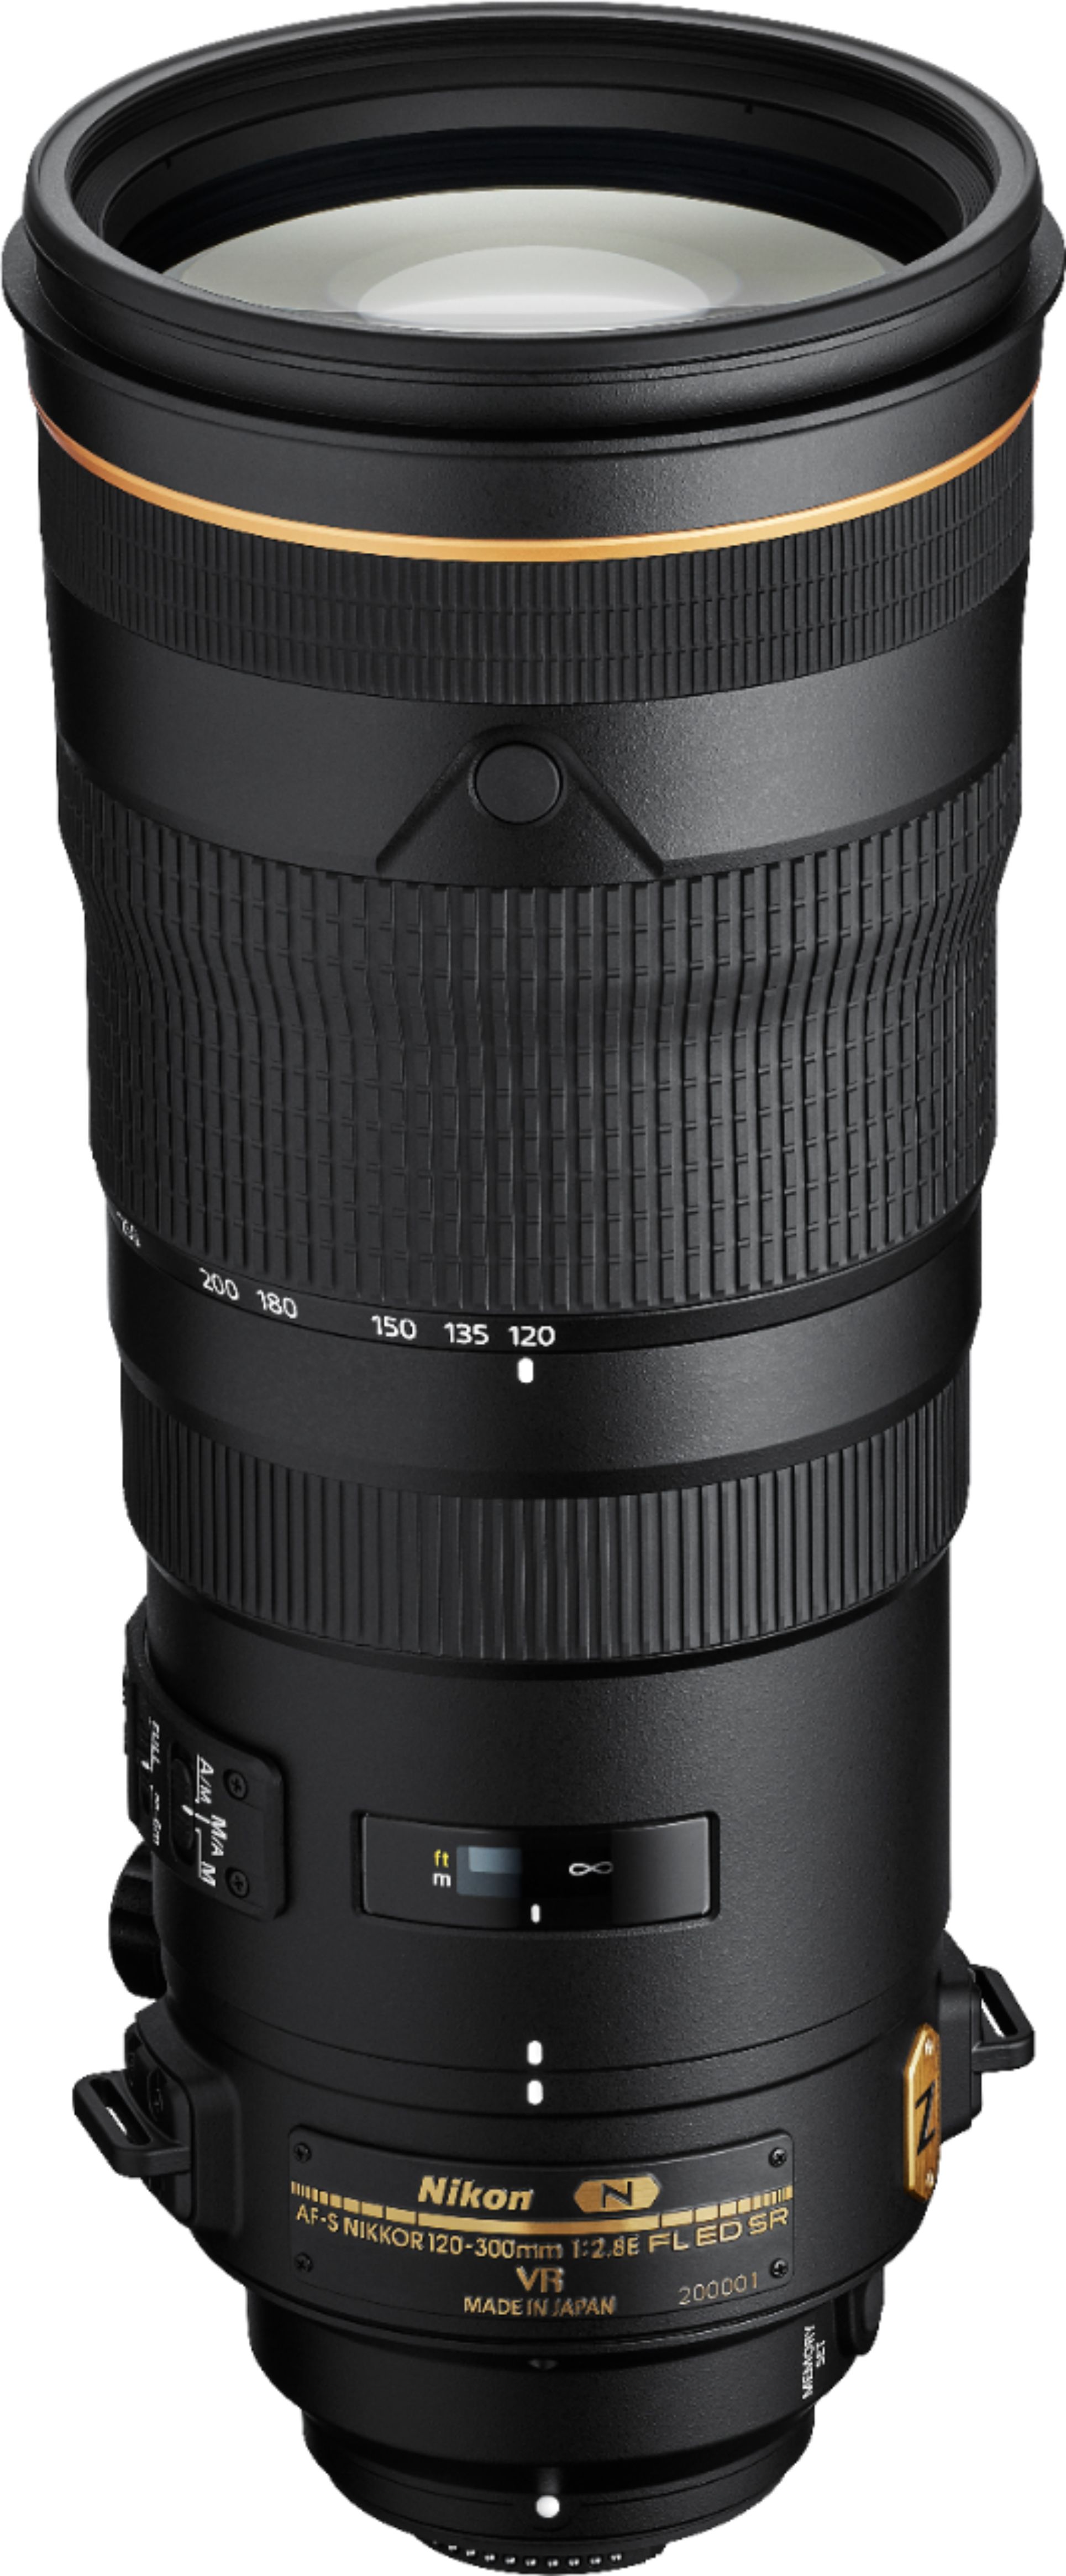 Nikon AF-S NIKKOR 120-300mm f/2.8 E FL ED SR VR Telephoto Zoom Lens Black  20088 - Best Buy